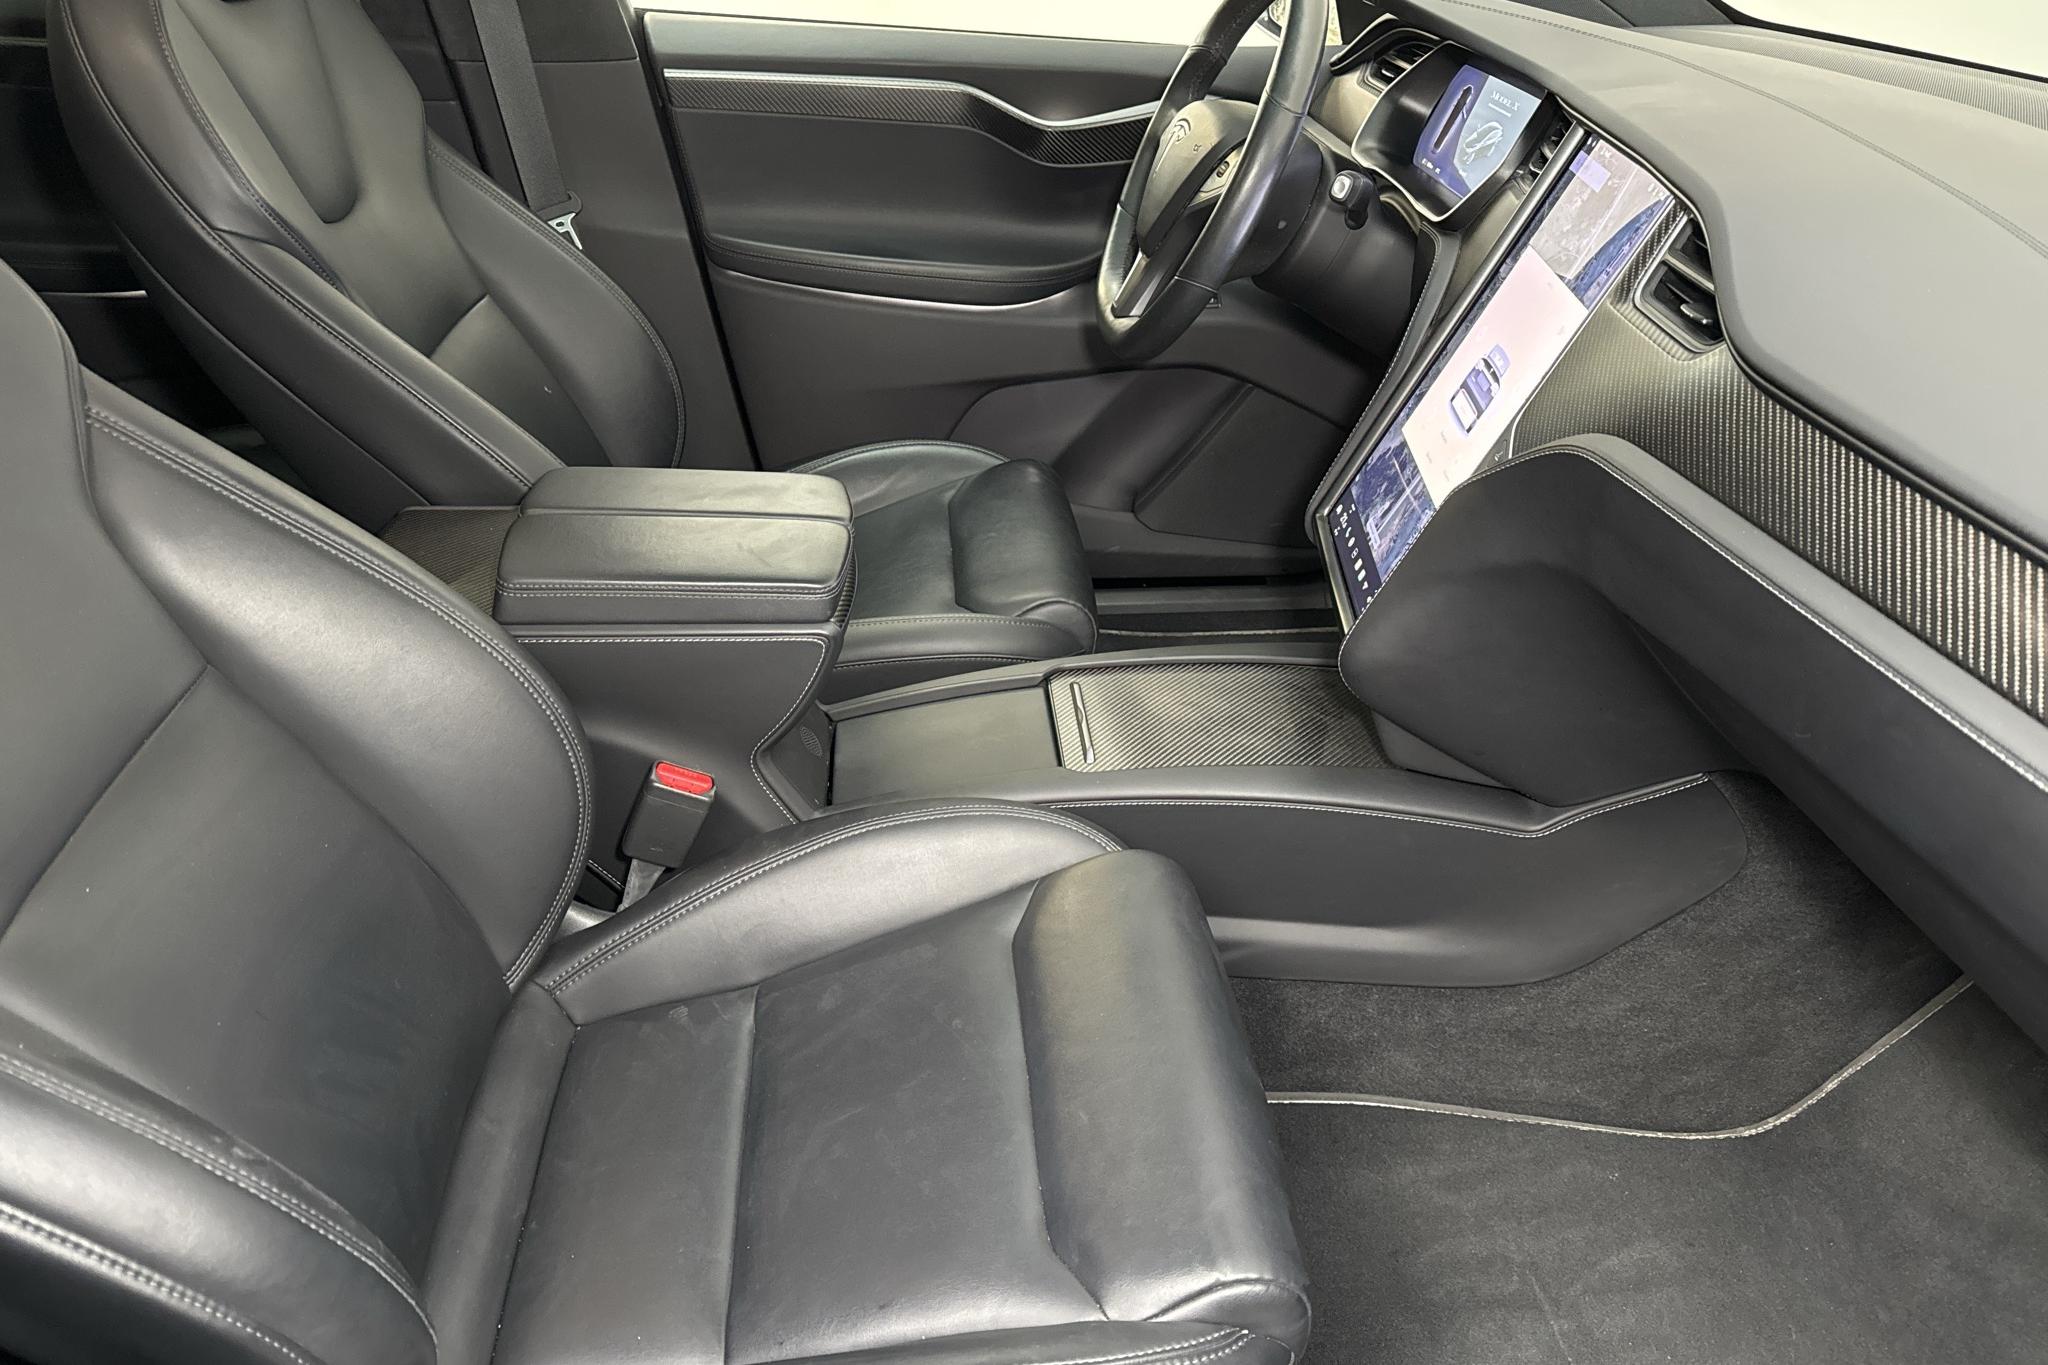 Tesla Model X Dual Motor Performance AWD - 123 520 km - Automatyczna - czarny - 2020